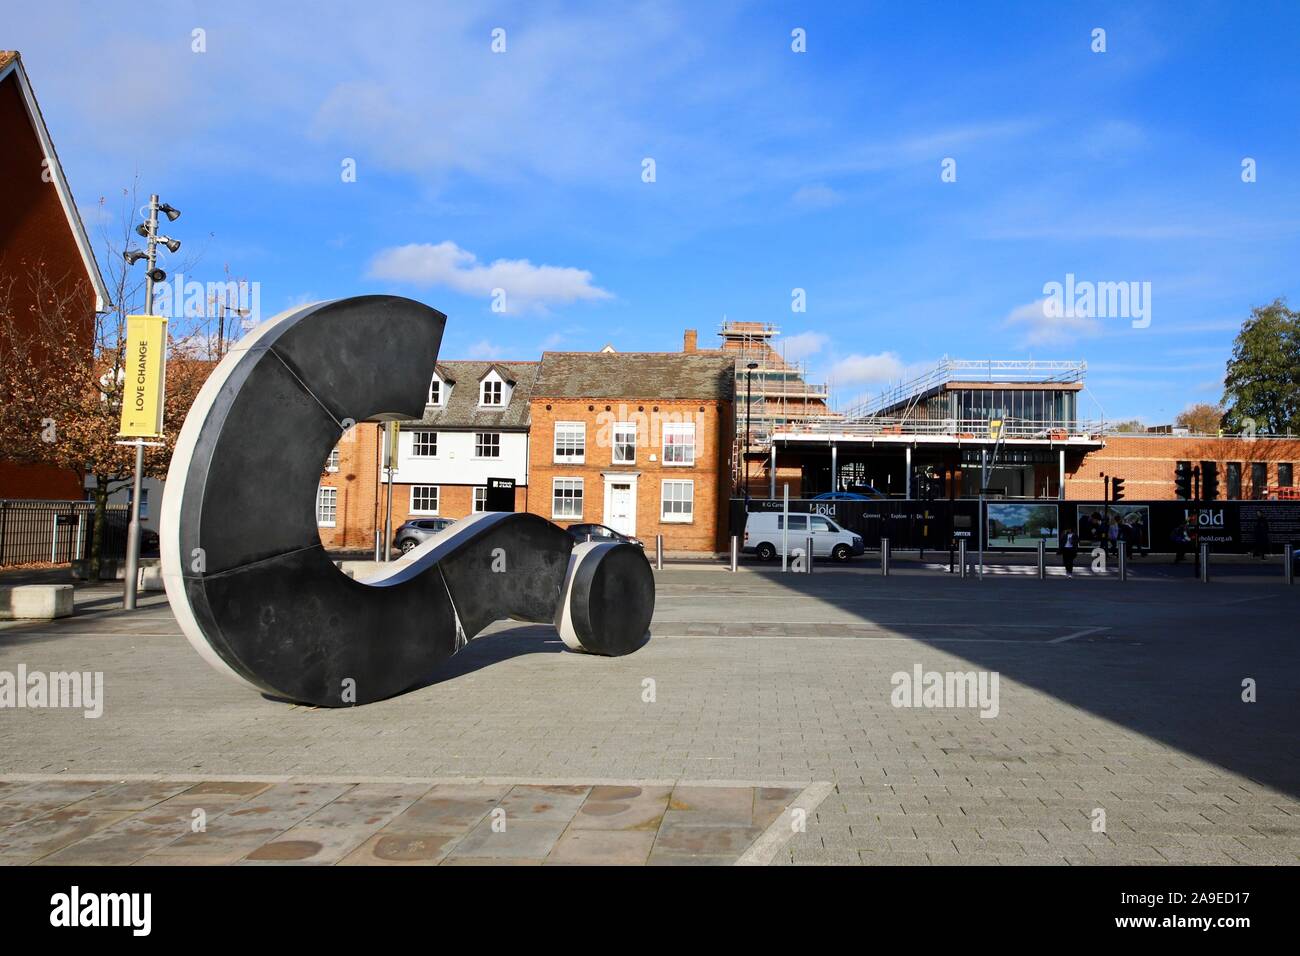 Ipswich, Suffolk, UK - 13 novembre 2019 : point d'interrogation géant sculpture à l'Université de Suffolk. Banque D'Images